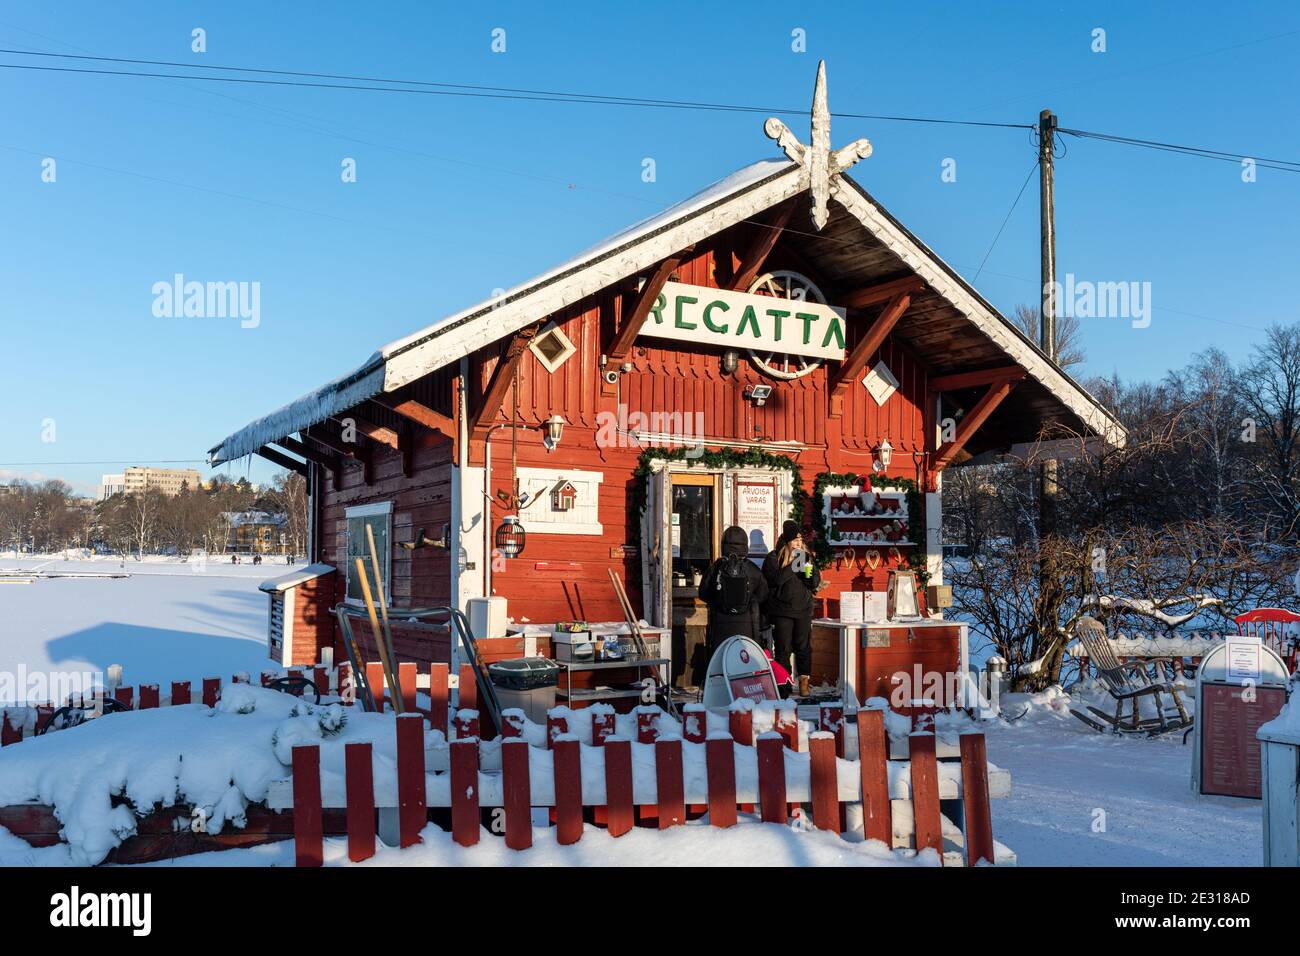 Café Regatta, una piccola cabina di legno rosso di oltre 120 anni sulle rive di Taivallahti con posti a sedere all'aperto, durante l'inverno a Helsinki, Finlandia Foto Stock